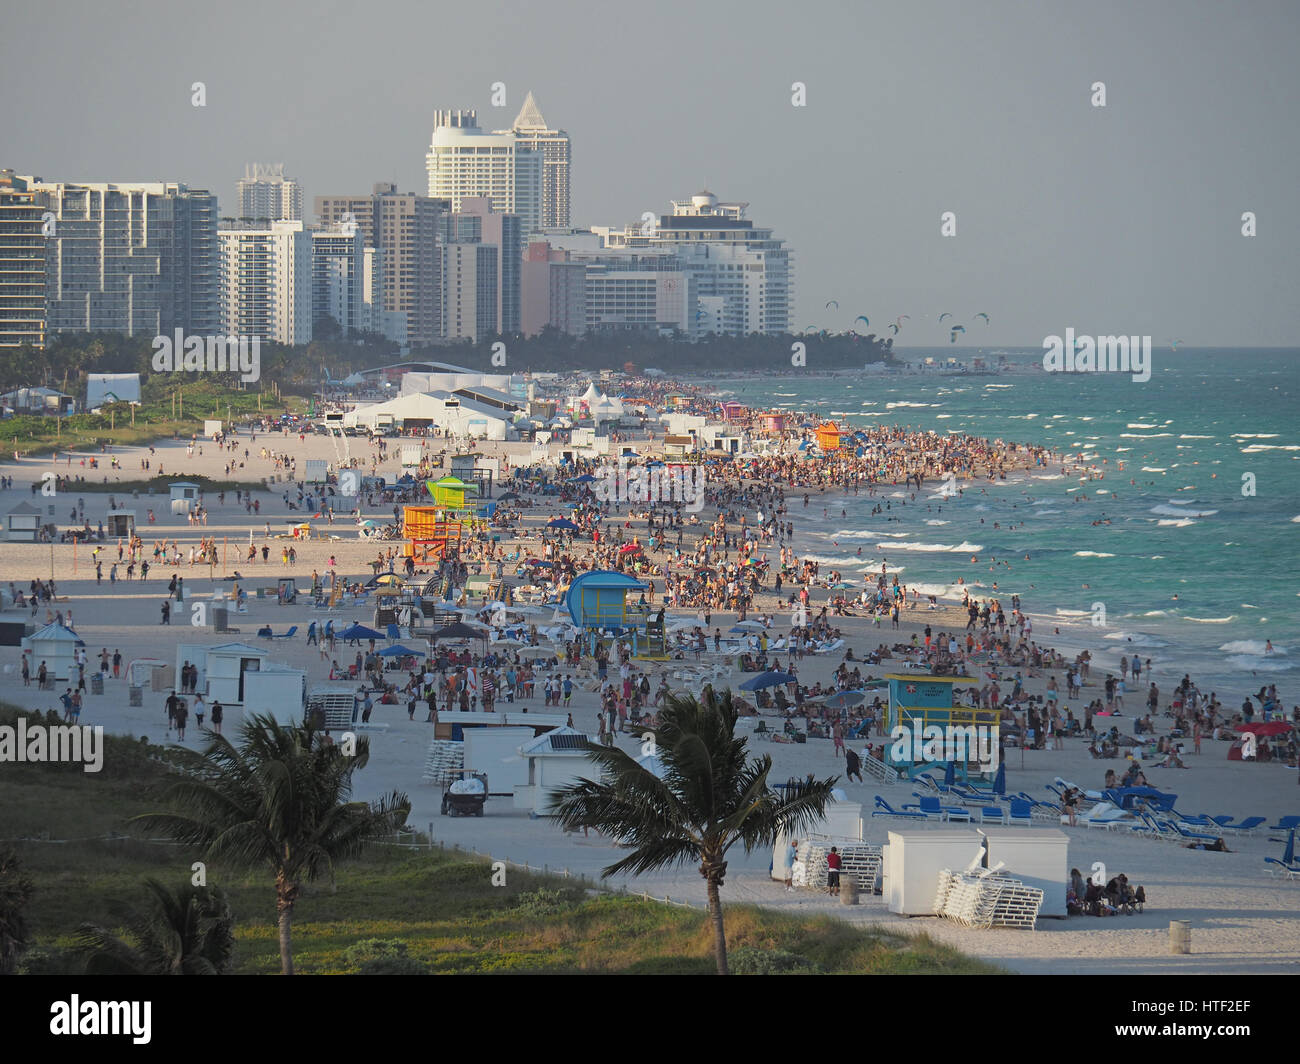 Affollata South Miami Beach in una domenica d'inverno. Foto Stock